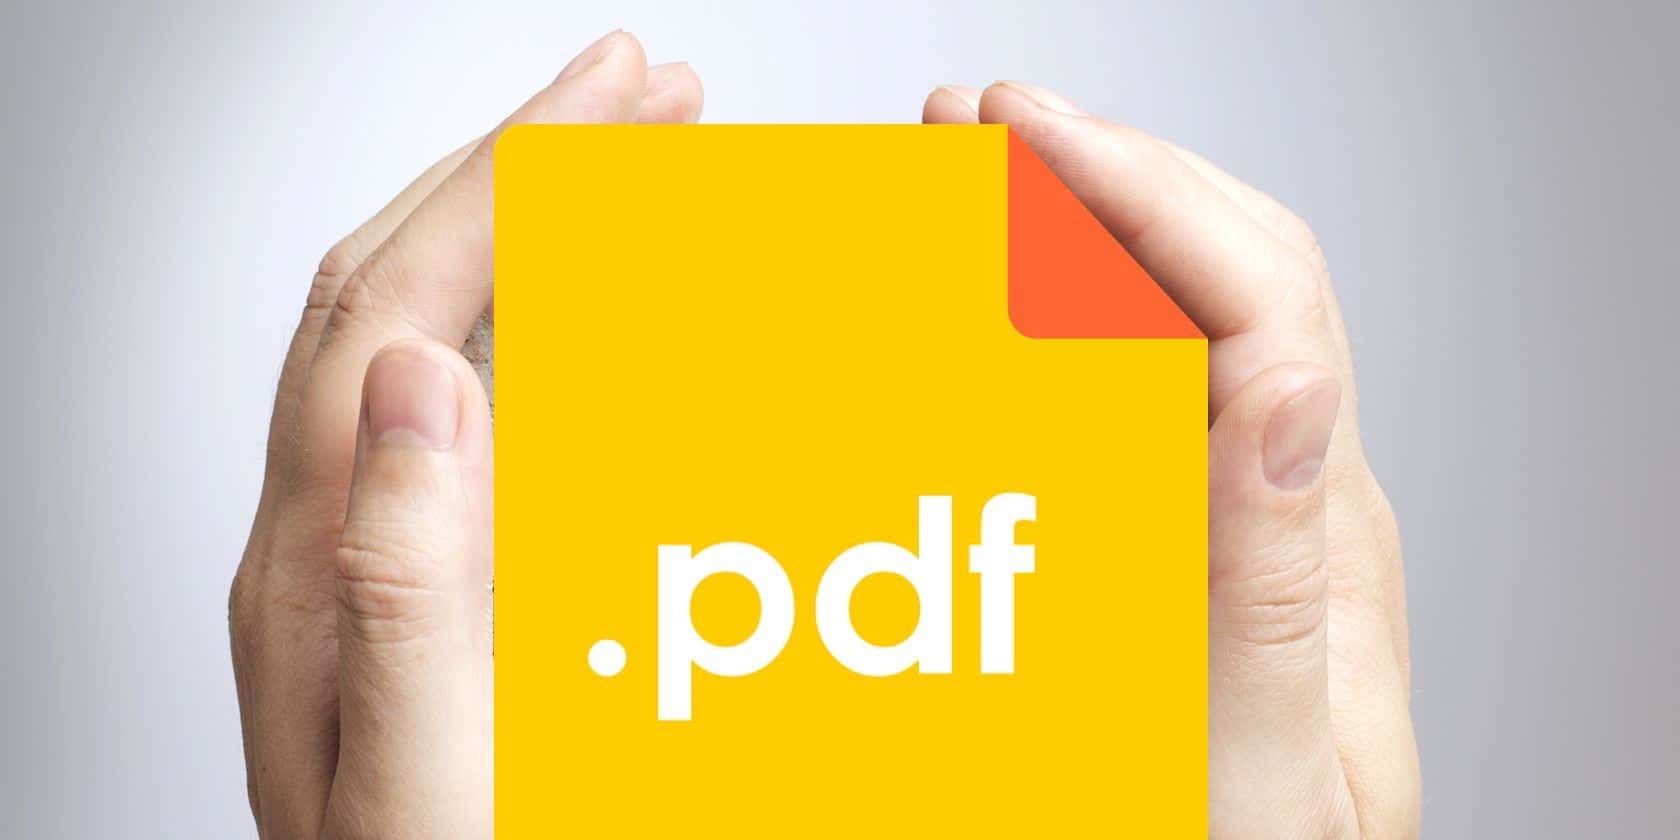 Compress a PDF File